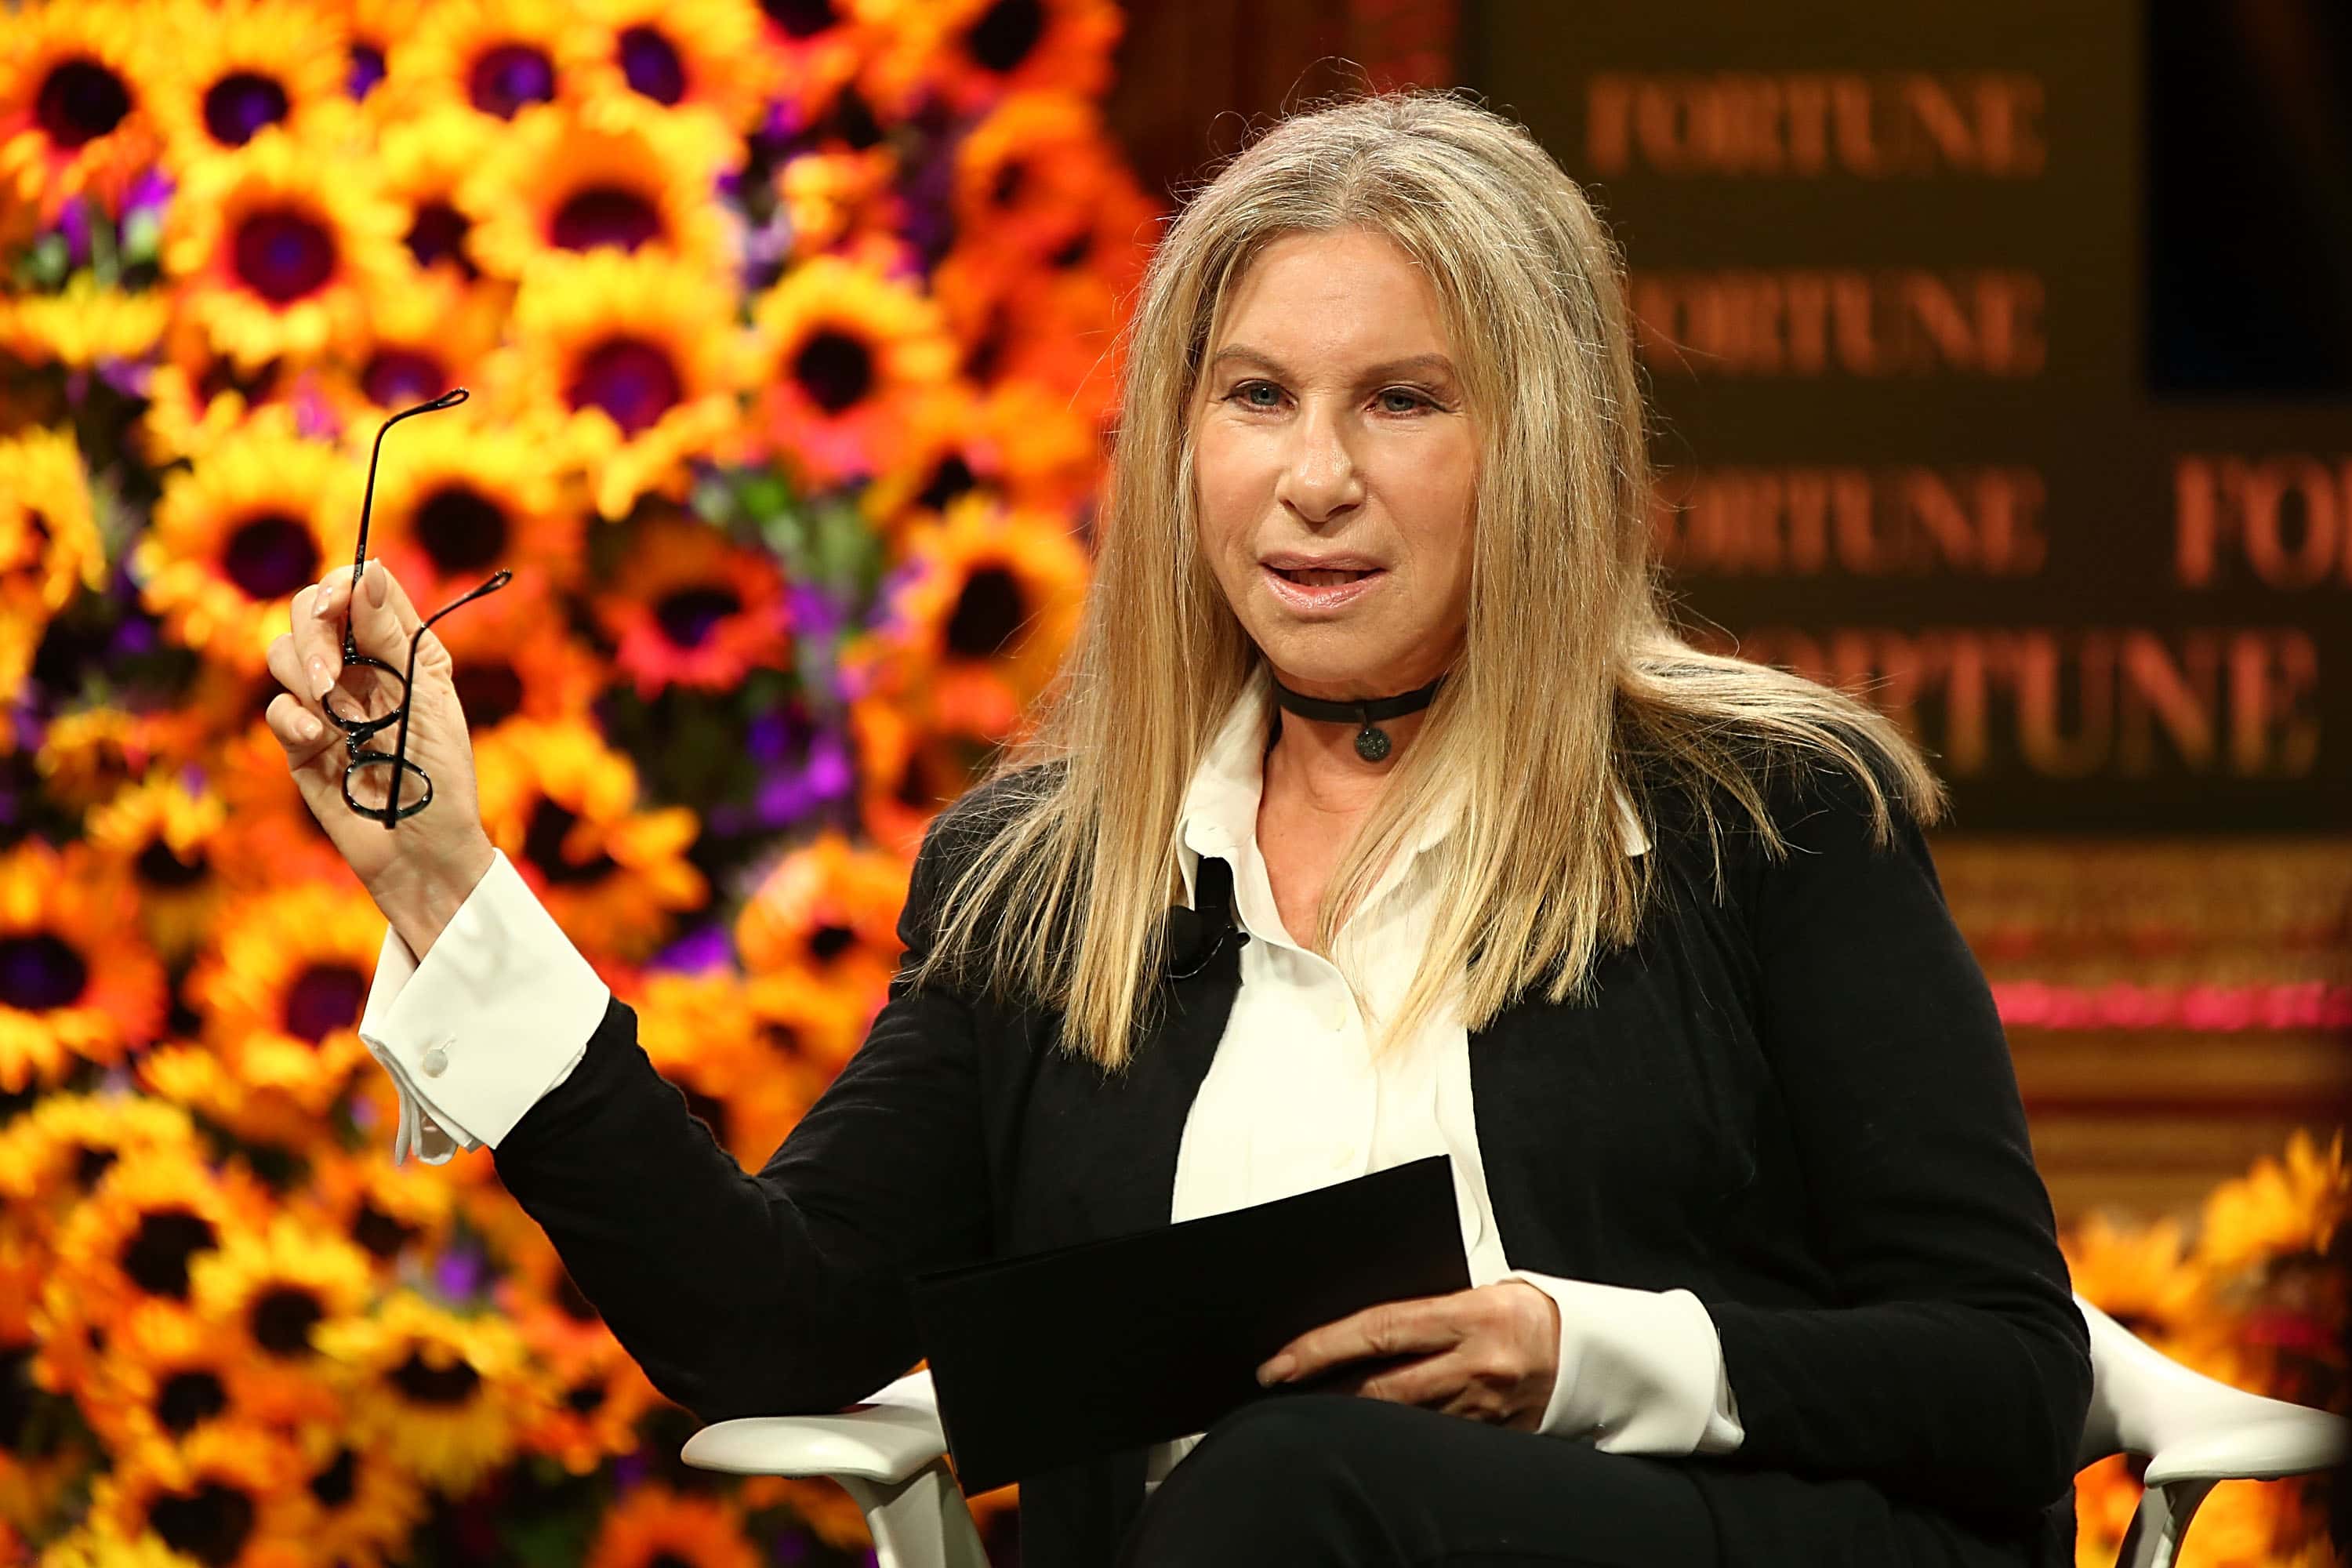 Barbra Streisand Facts